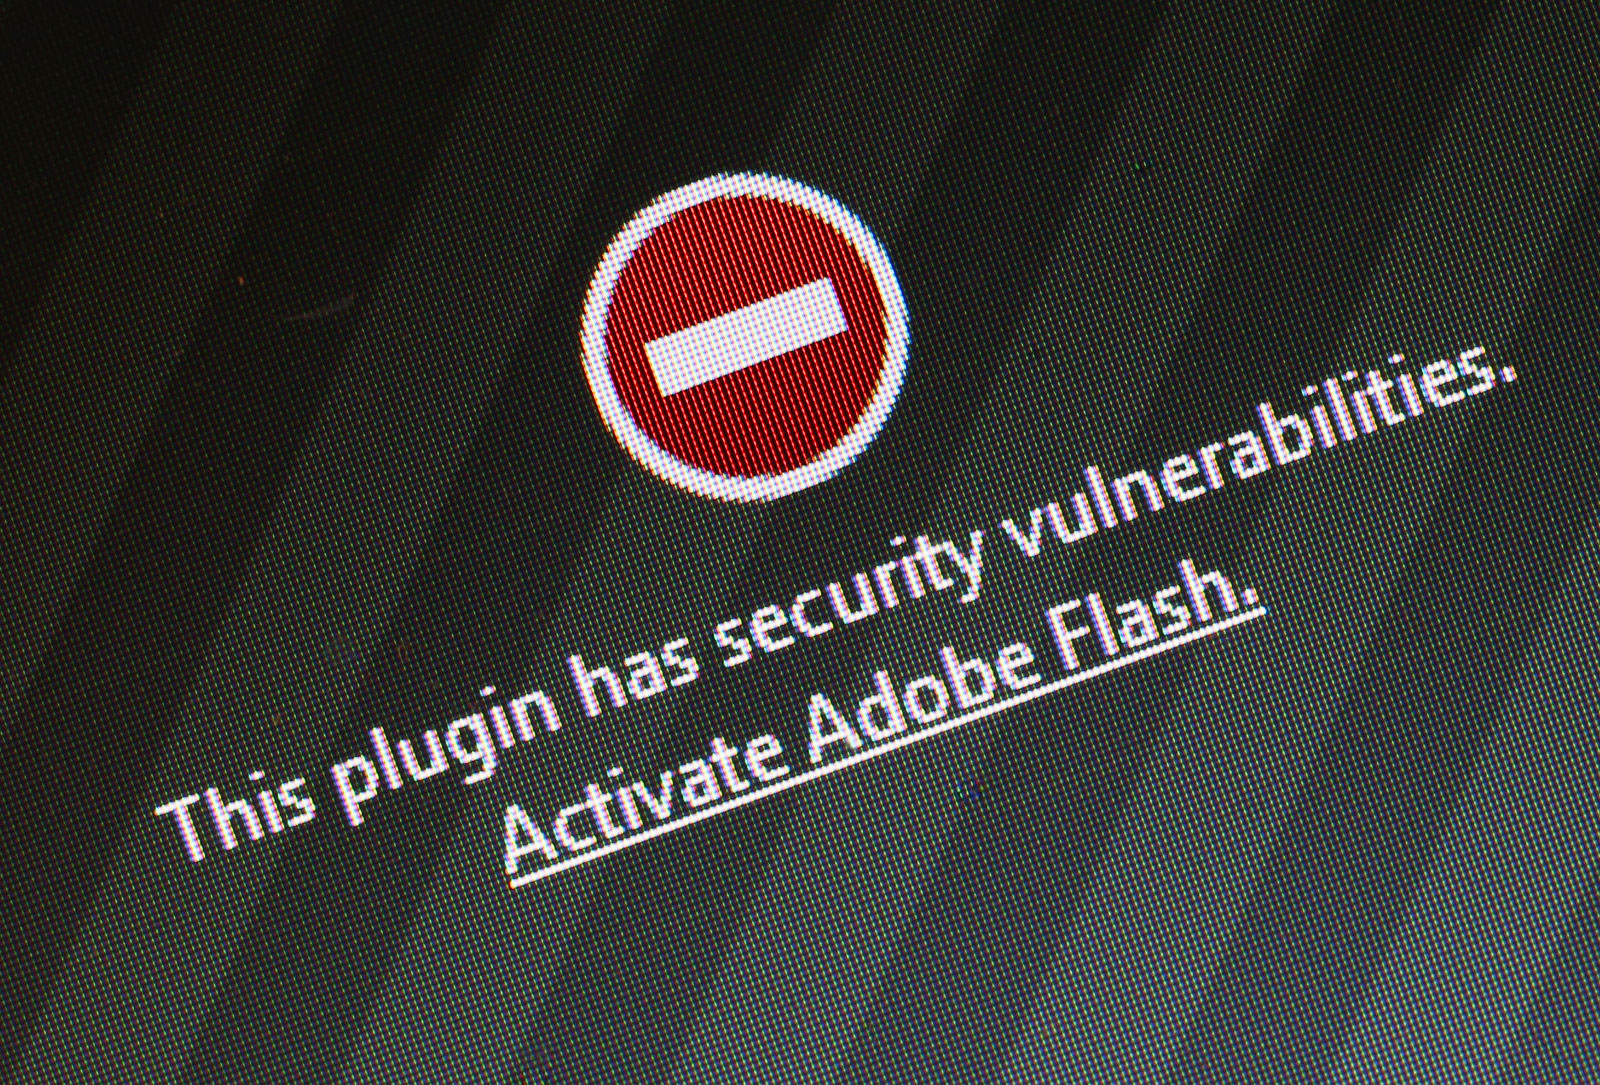 Уязвимость Adobe Flash позволила заразить его вредоносным ПО